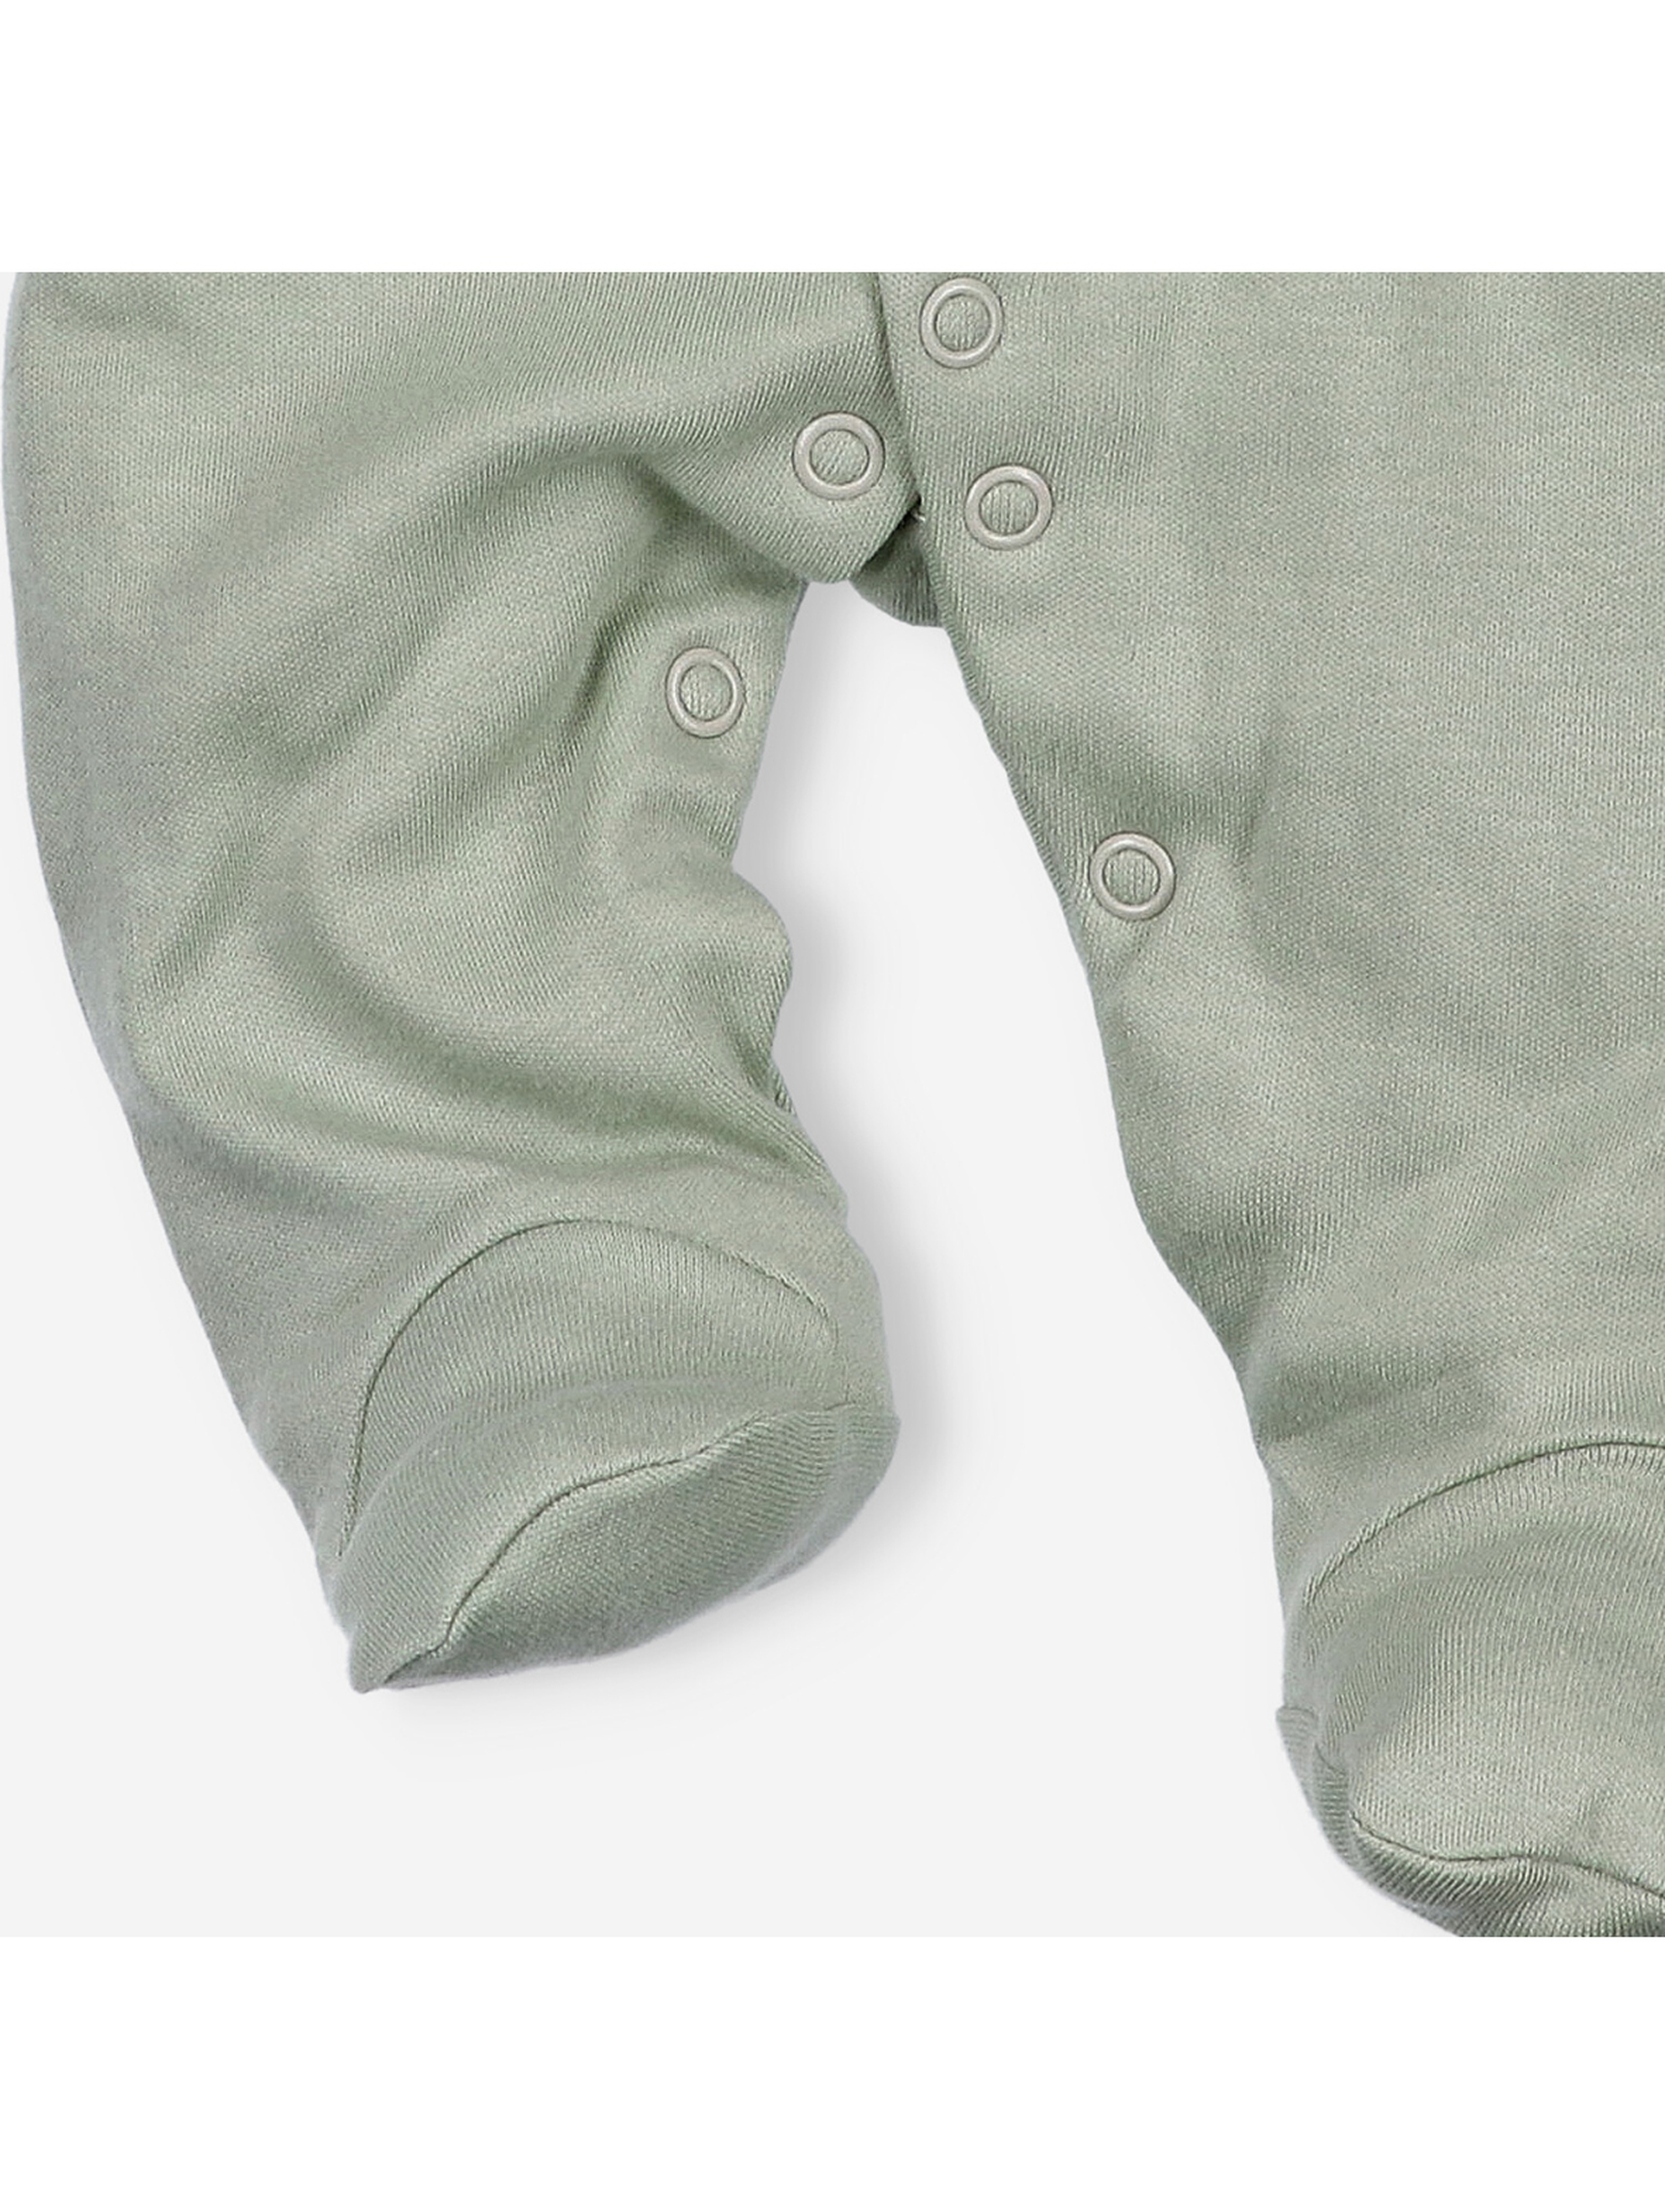 Pajac niemowlęcy z bawełny organicznej kolor oliwkowy